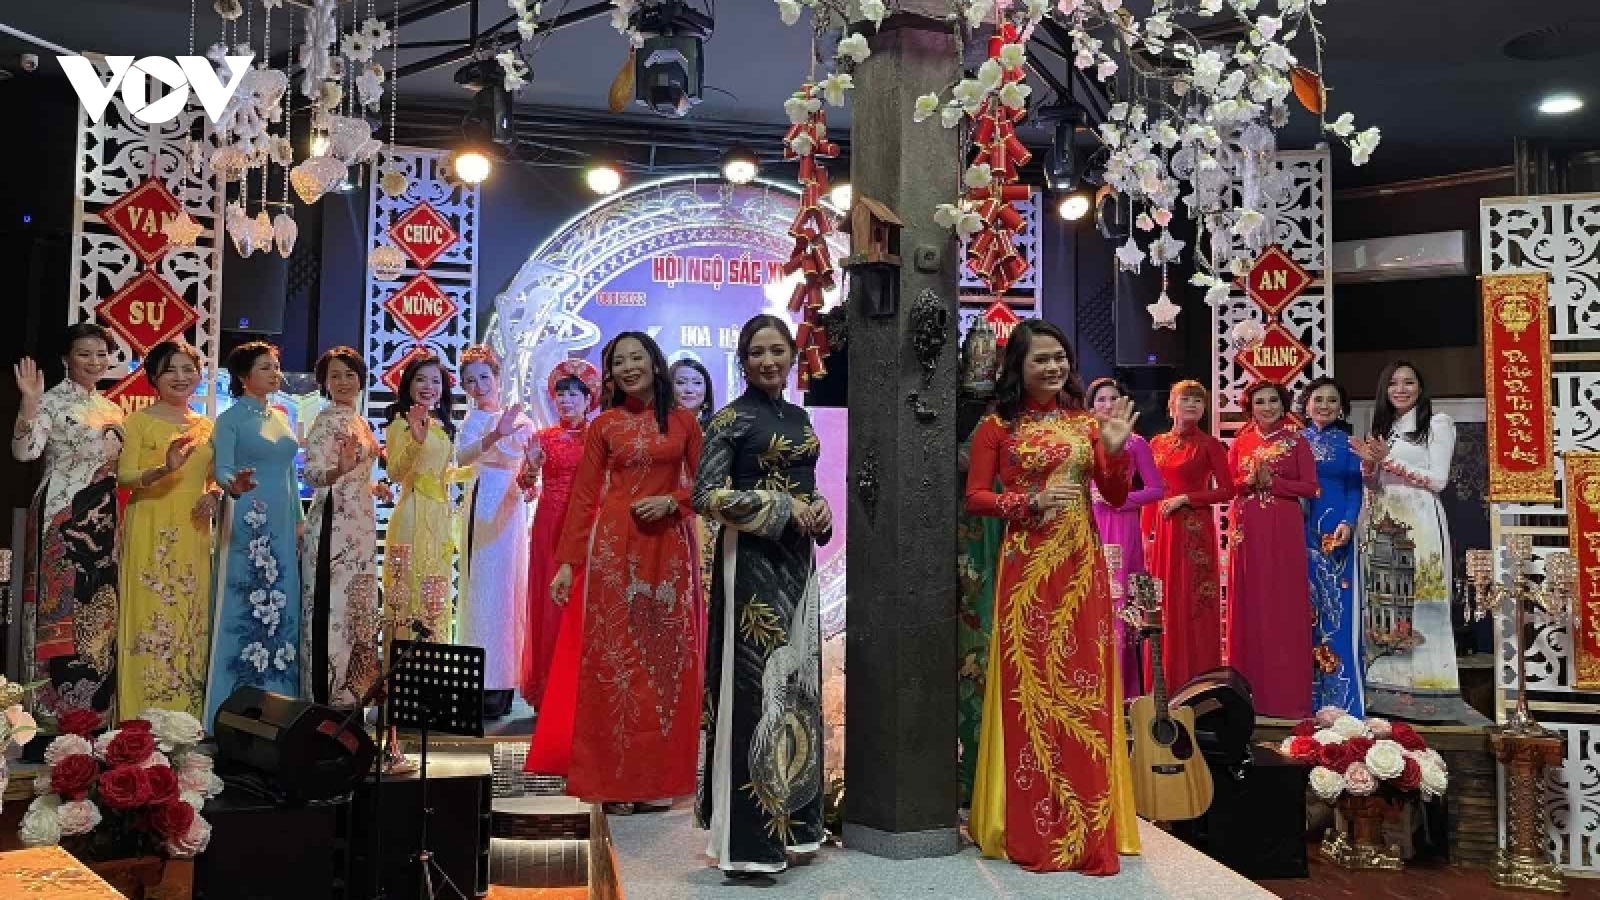 Trình diễn áo dài truyền thống Việt Nam qua "Hội ngộ sắc xuân 2022" tại Séc